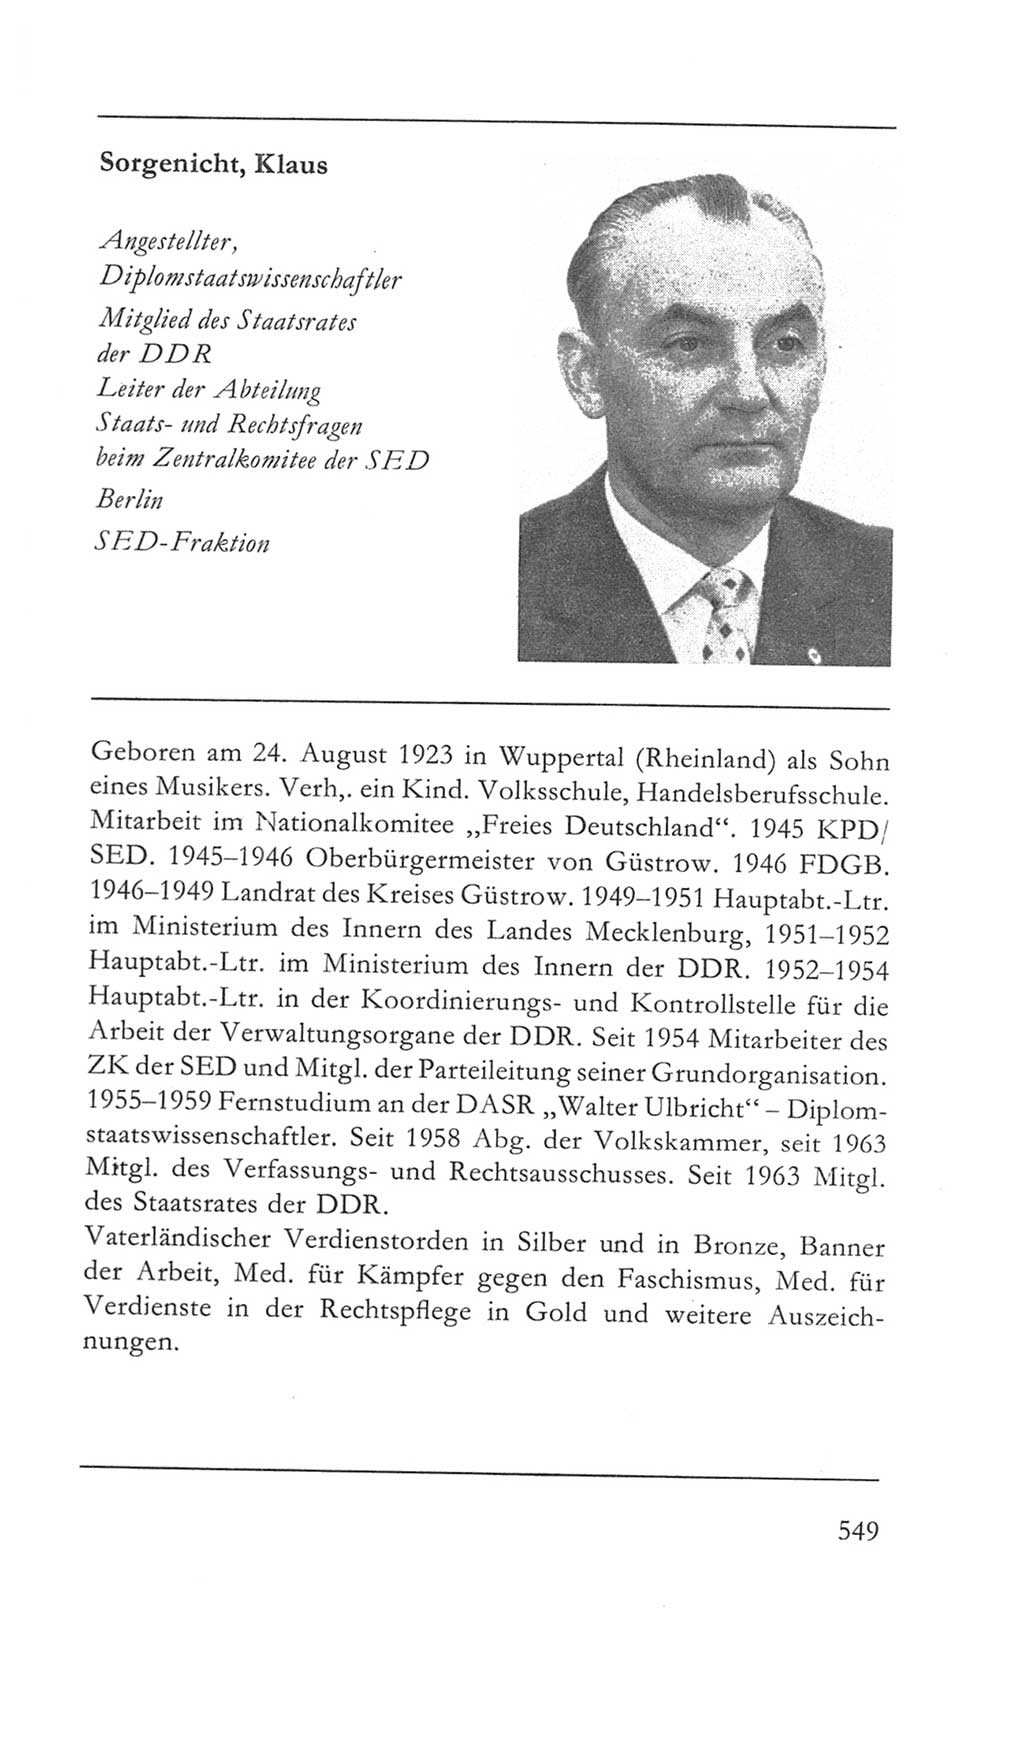 Volkskammer (VK) der Deutschen Demokratischen Republik (DDR) 5. Wahlperiode 1967-1971, Seite 549 (VK. DDR 5. WP. 1967-1971, S. 549)